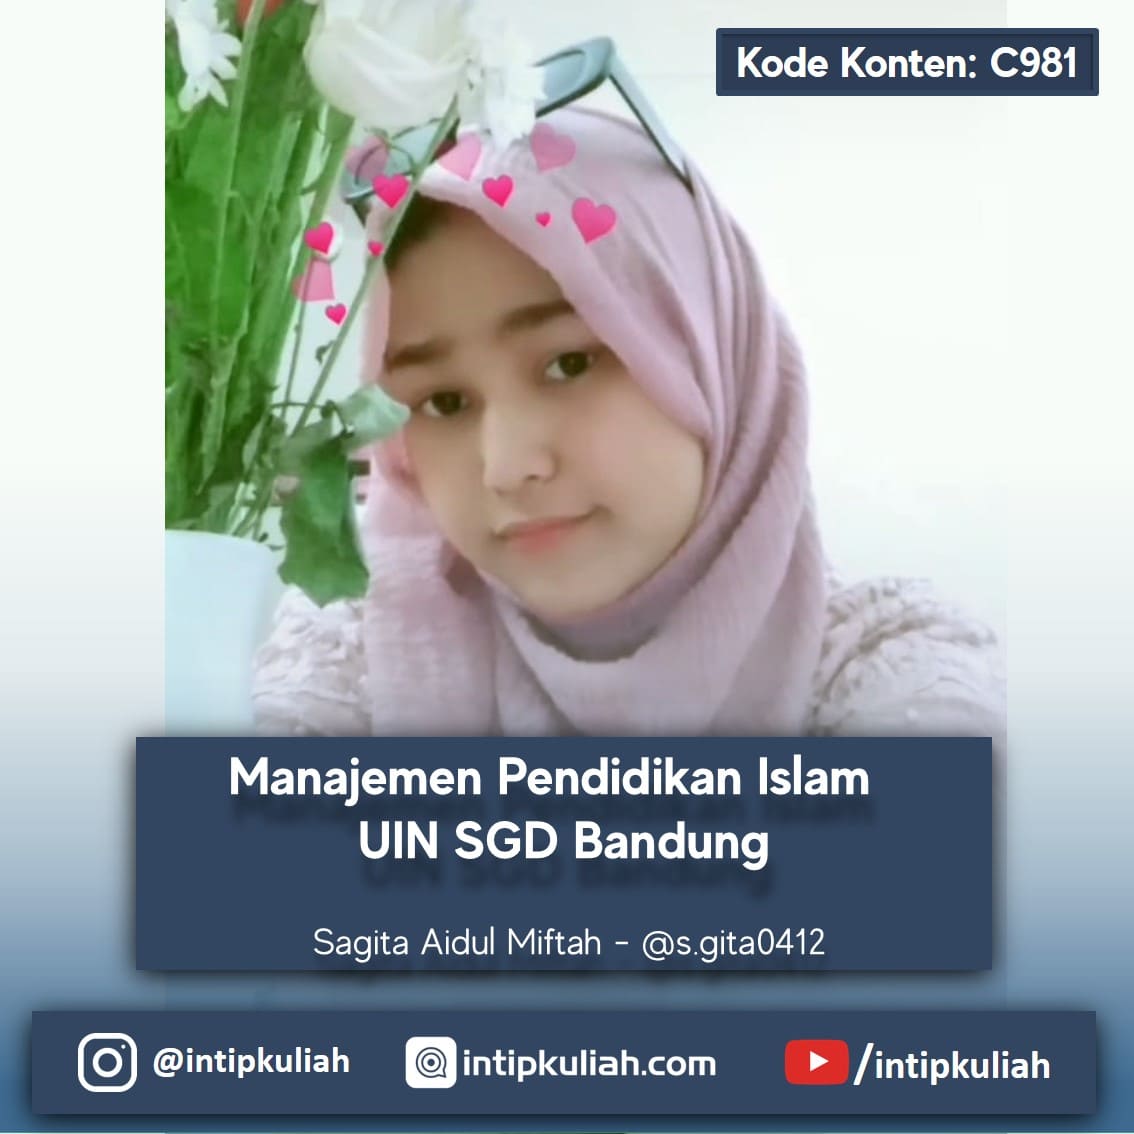 Manajemen Pendidikan Islam UIN Sunan Gunung Djati Bandung (Sagita)